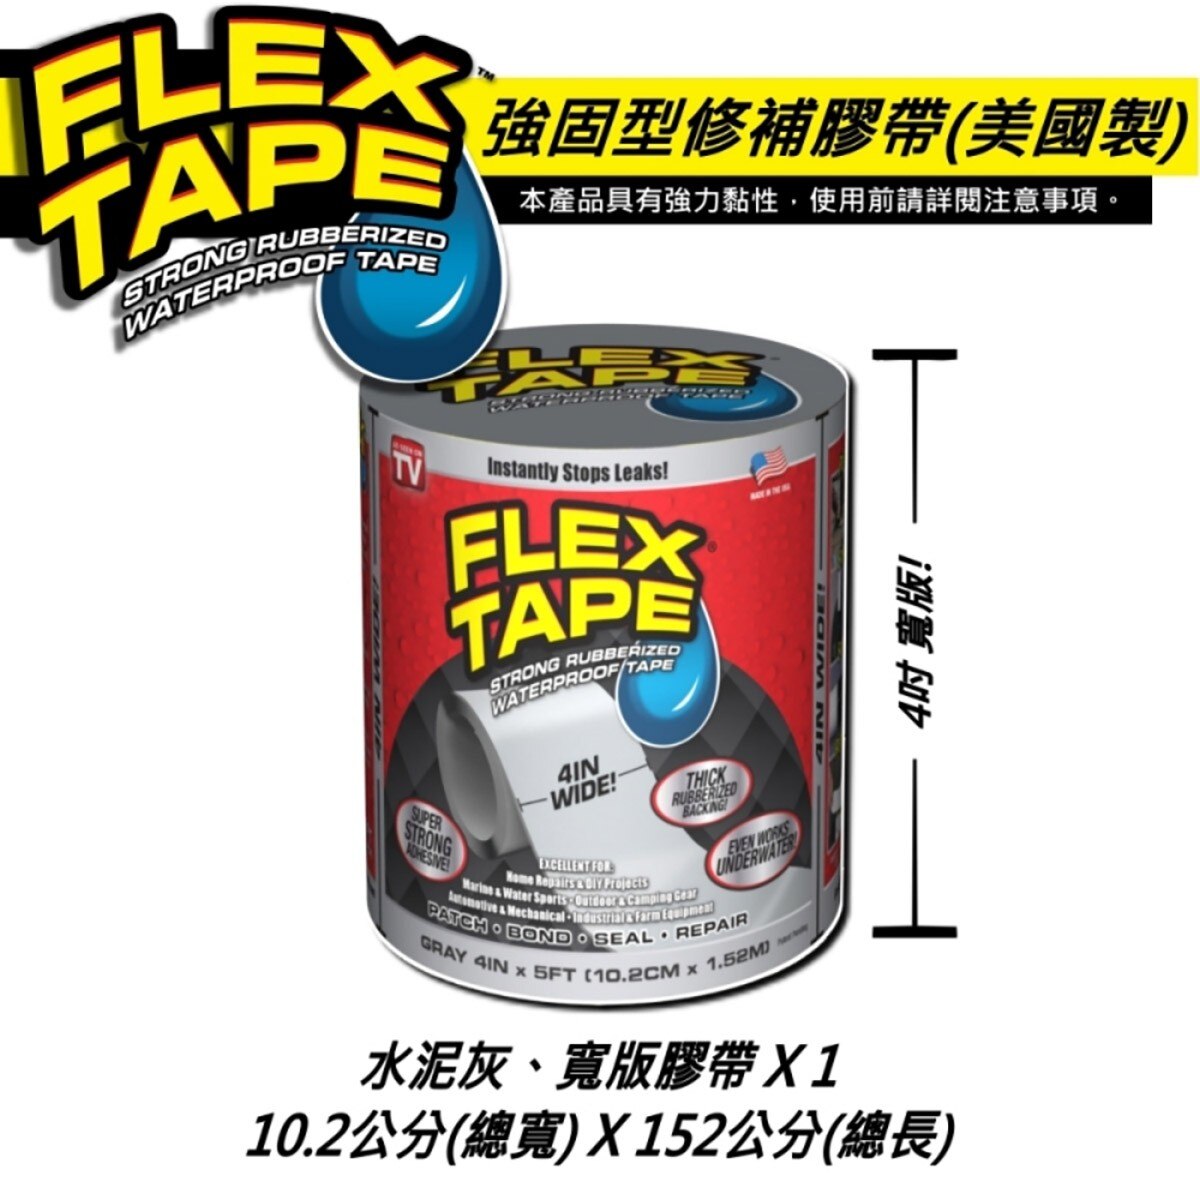 美國FLEX TAPE強固型修補膠帶 4吋寬版(水泥灰)完全防水，水底下保有完整黏性，貼合止漏，瞬間密封，超強黏性適用多種表面材質。特殊橡膠材質，抗曬不劣化，抗擠壓、拉扯。